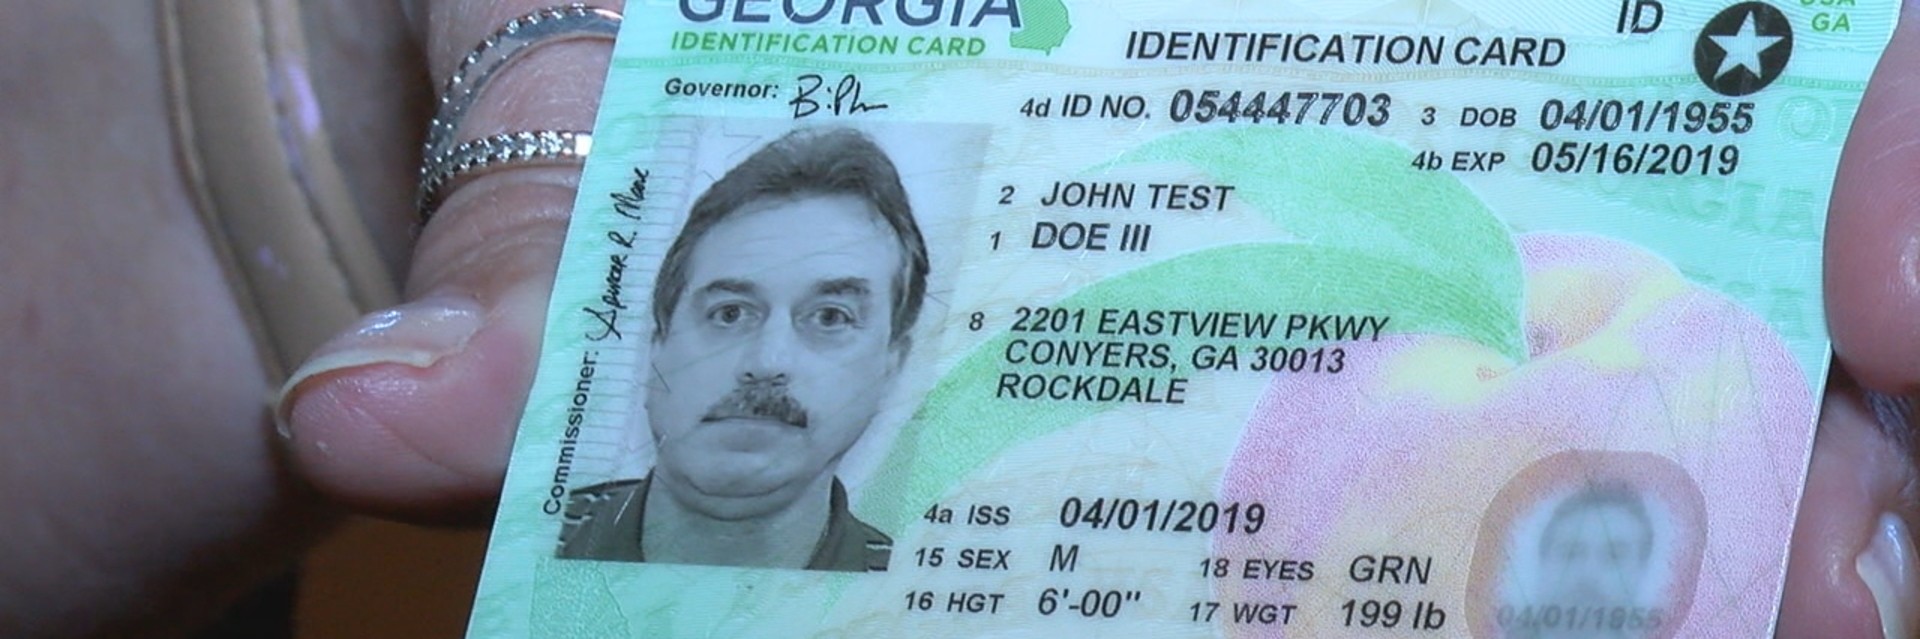 georgia state driver's license